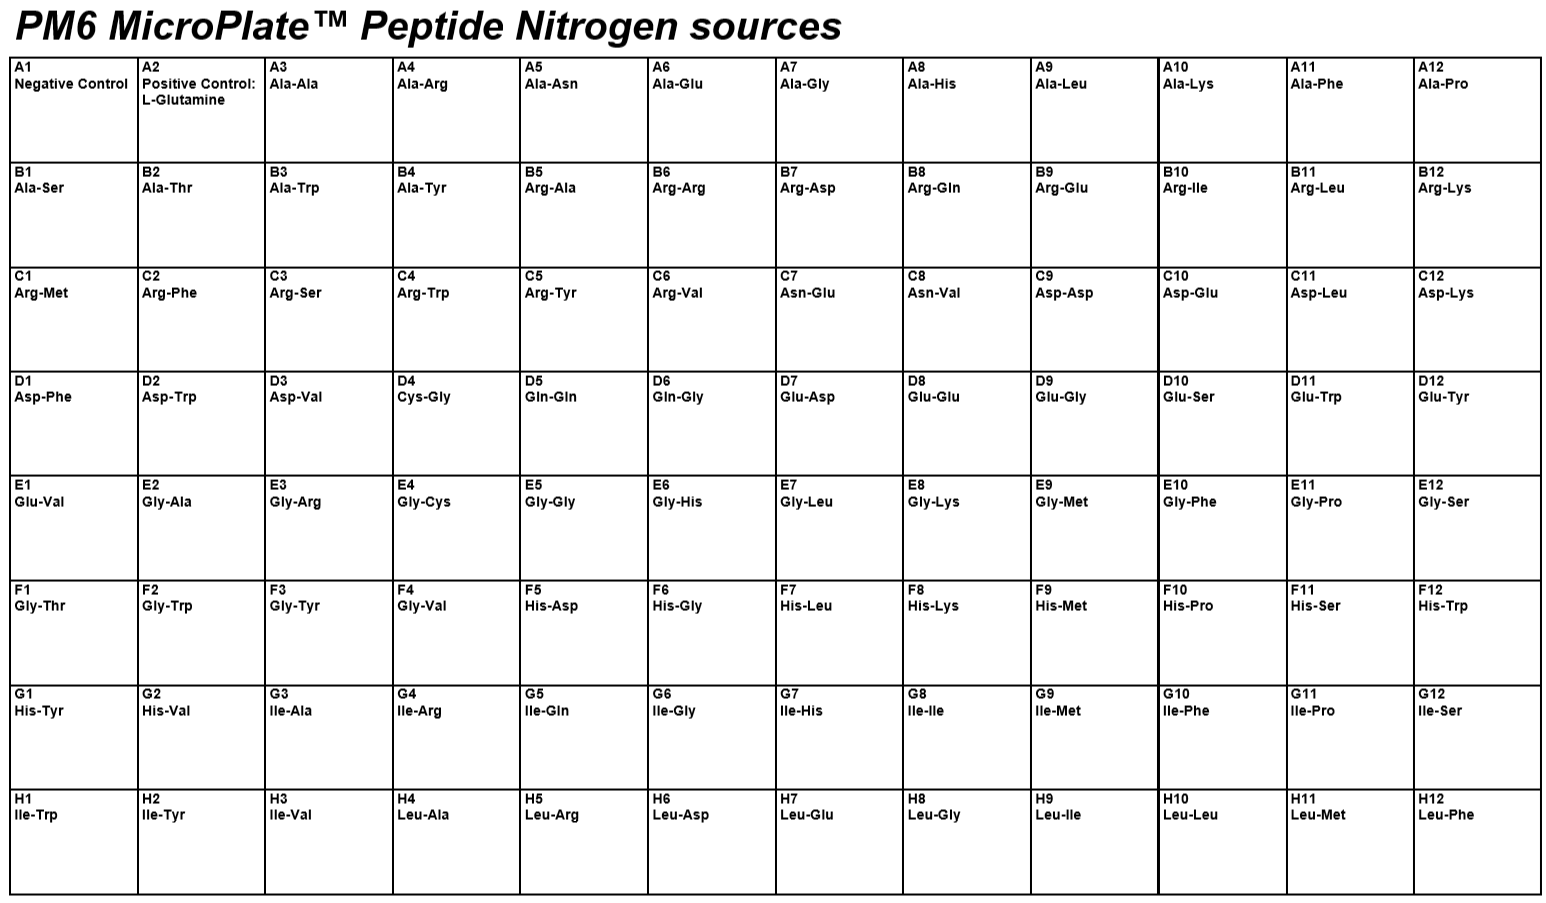 PM6 Peptide Nitrigen Sources.PNG